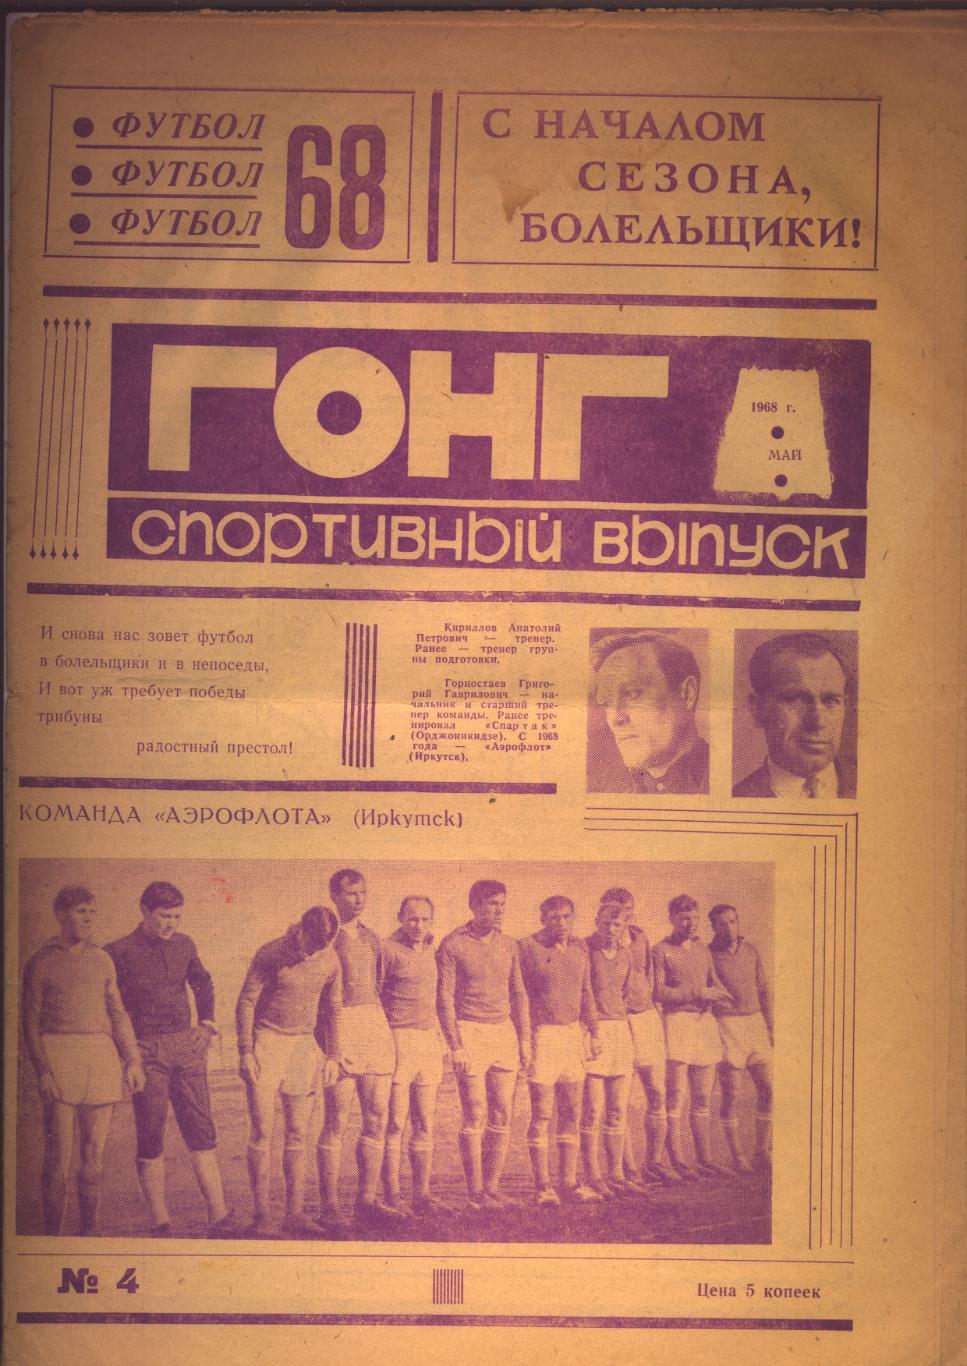 Футбол 68 Гонг город Иркутск (команда Аэрофлот) 1968 год.